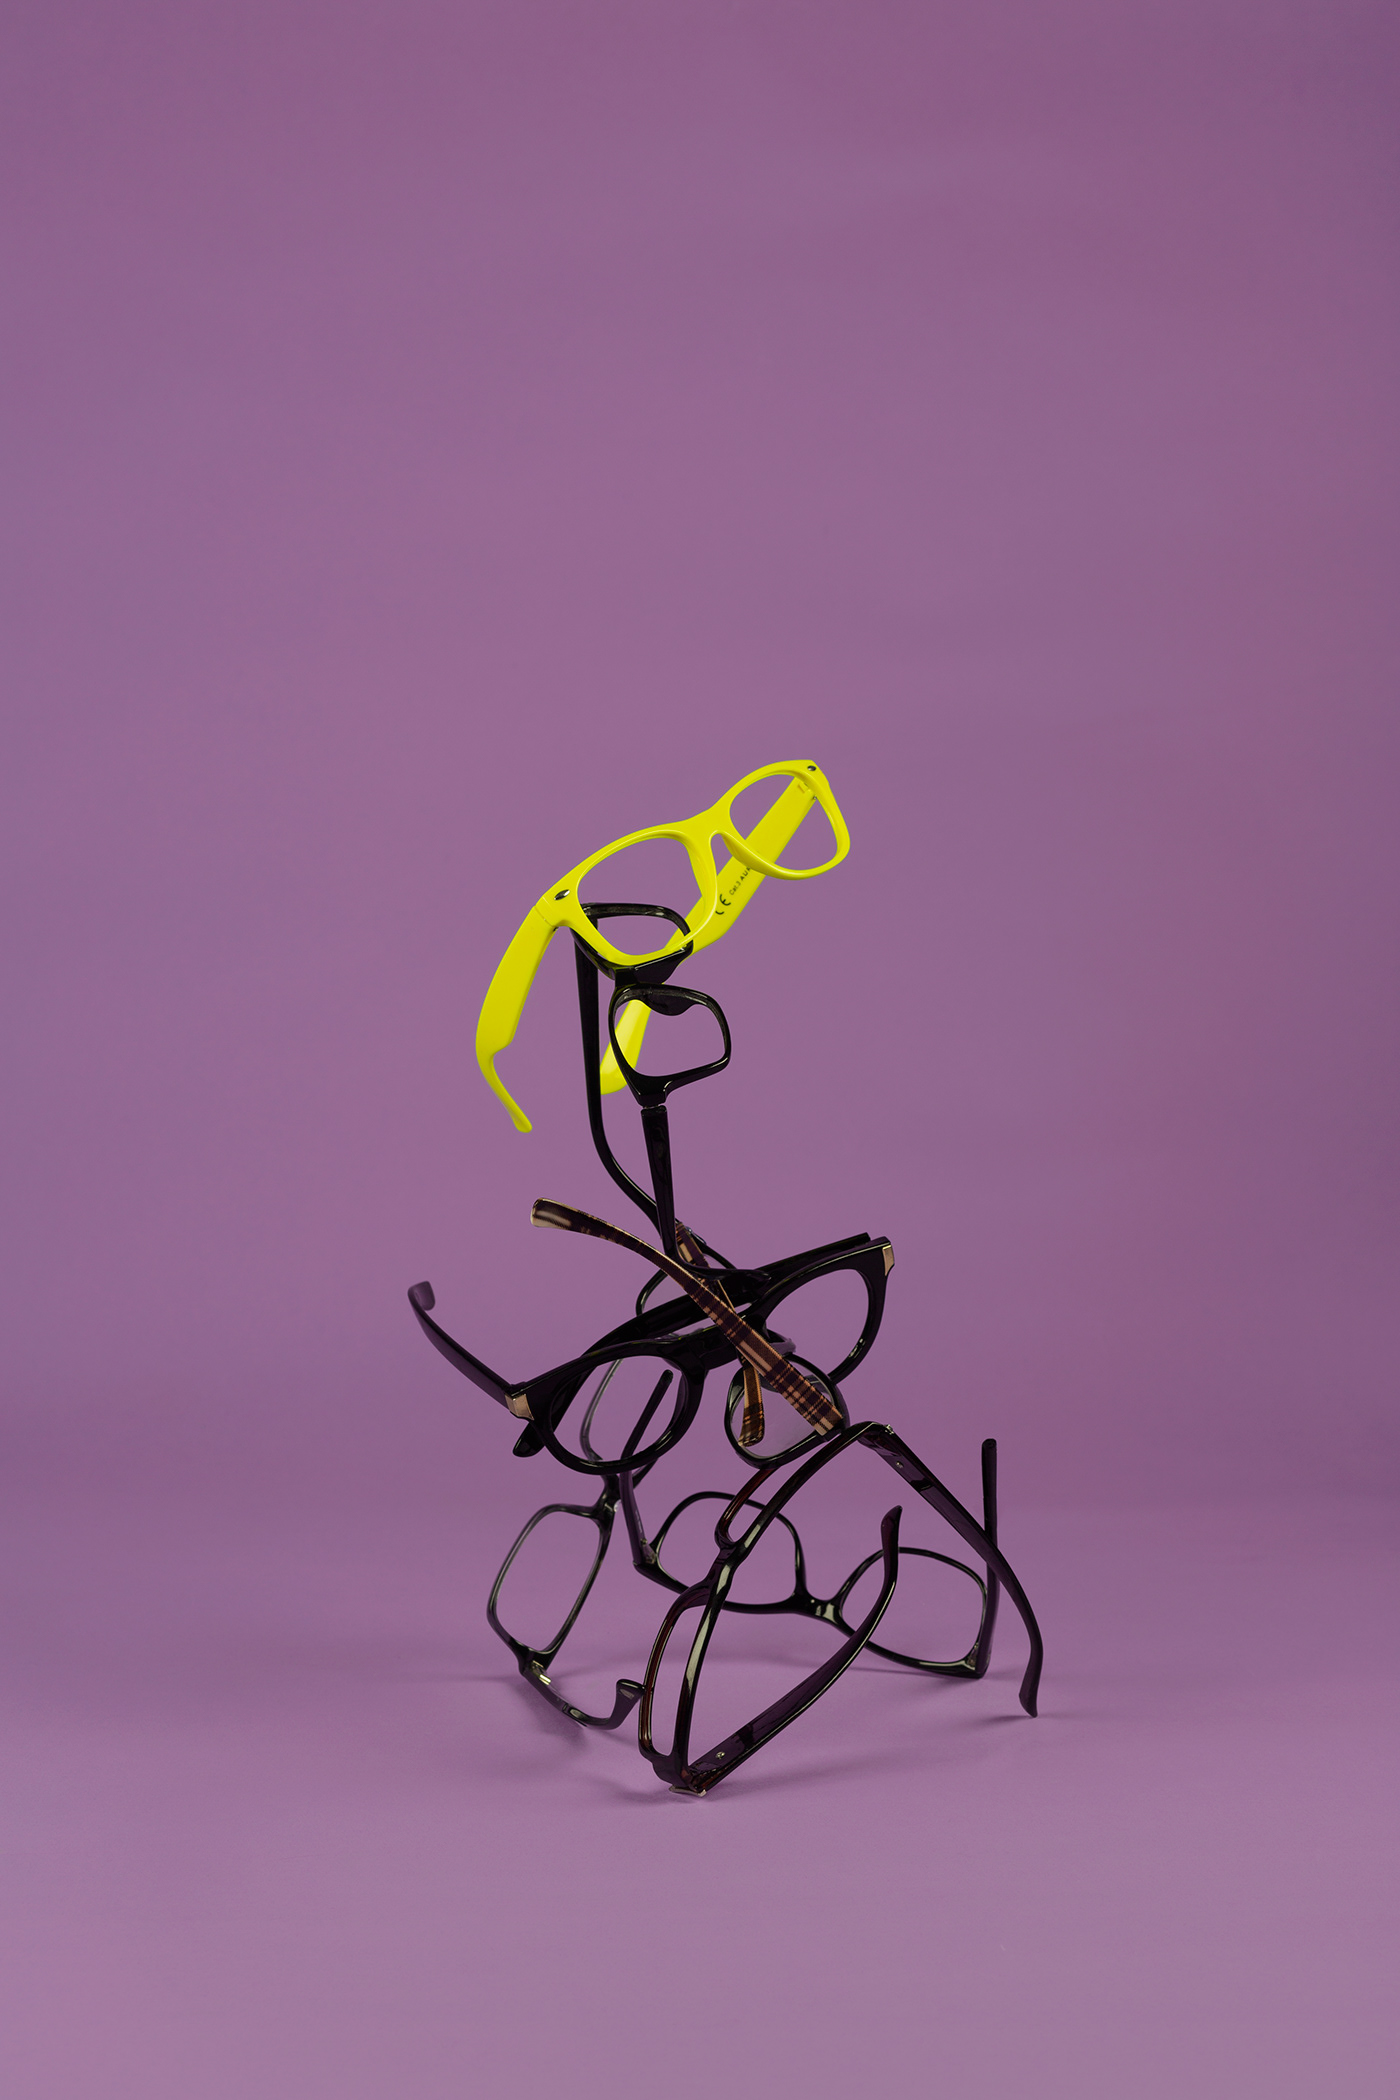 construction glasses lunette lunettes photo Photographie purple sculpture yellow